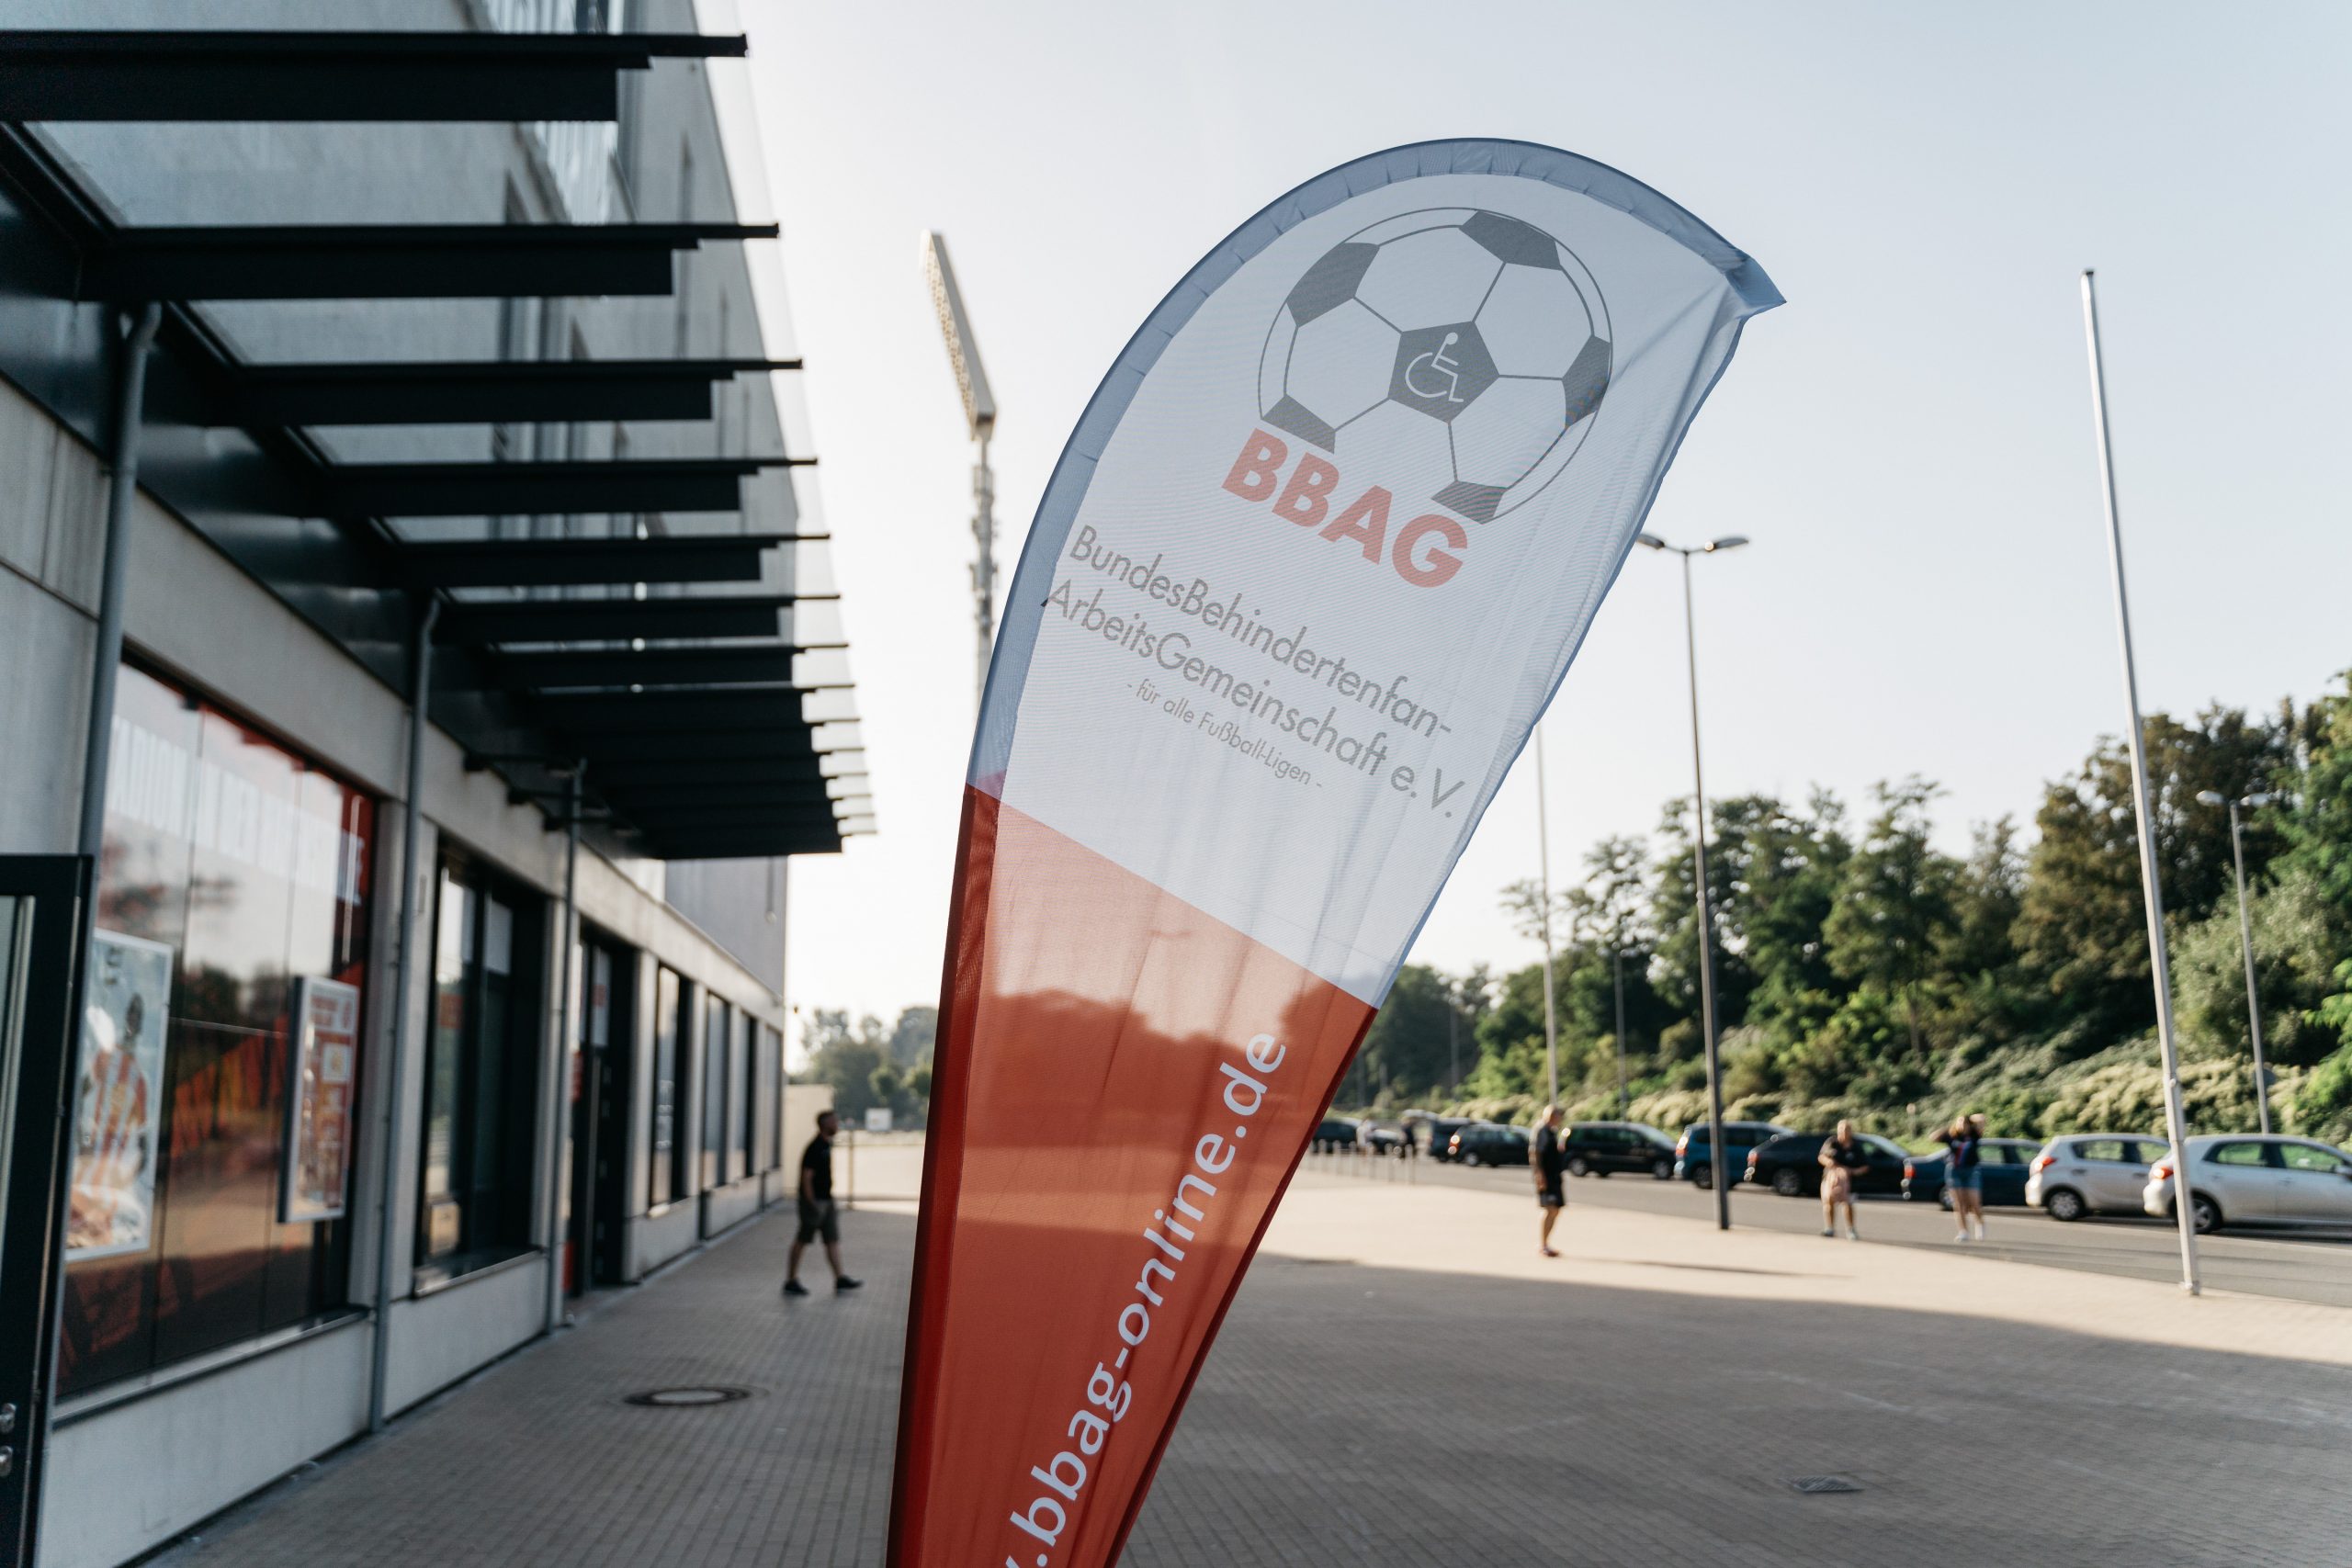 BBAG Fahne vor dem Stadion an der Hafenstrasse in Essen